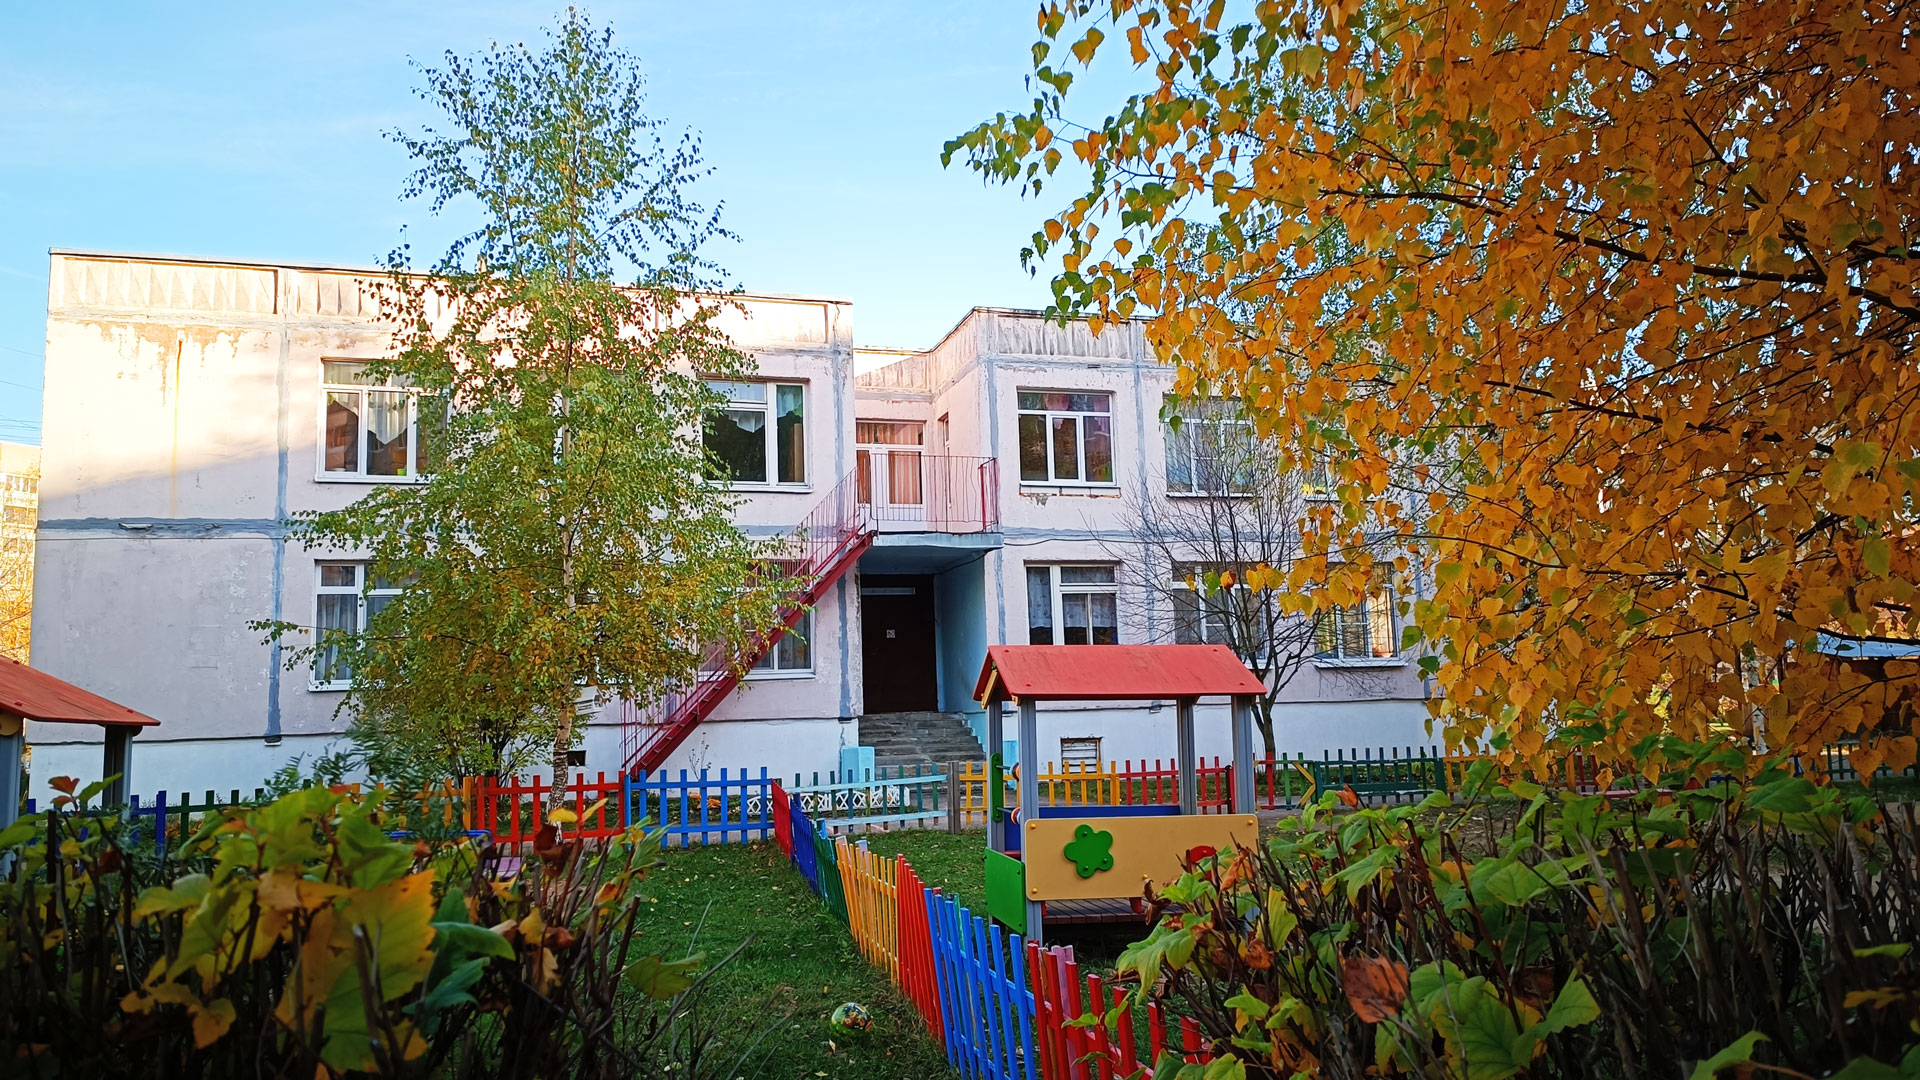 Детский сад 114 Ярославль: общий вид здания.